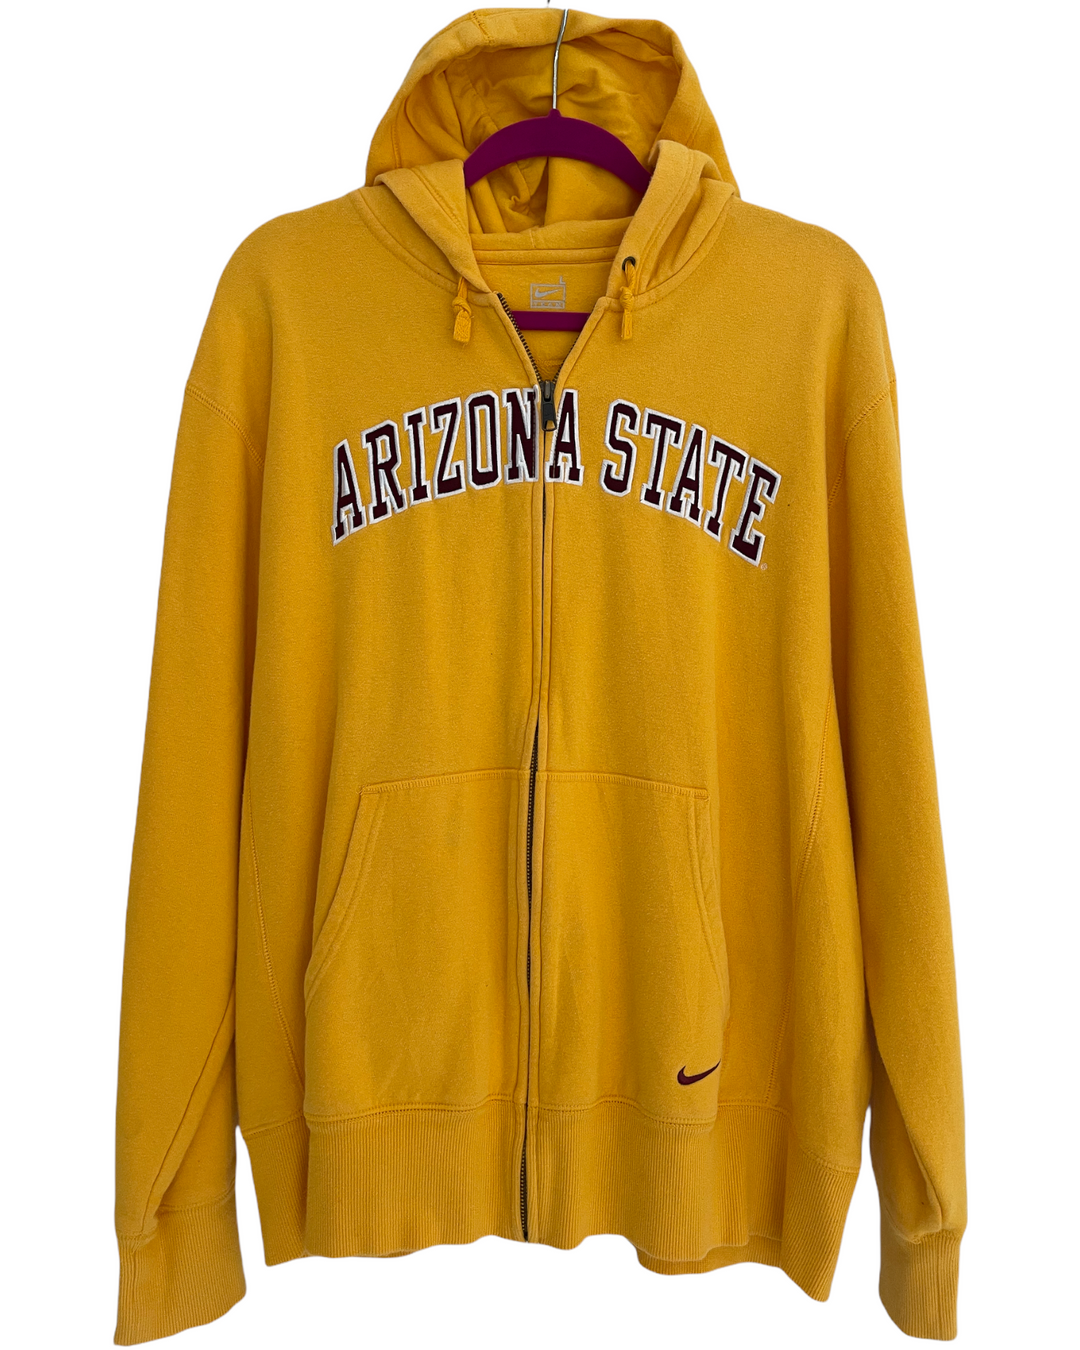 ASU Vintage Zip Up Sweatshirt